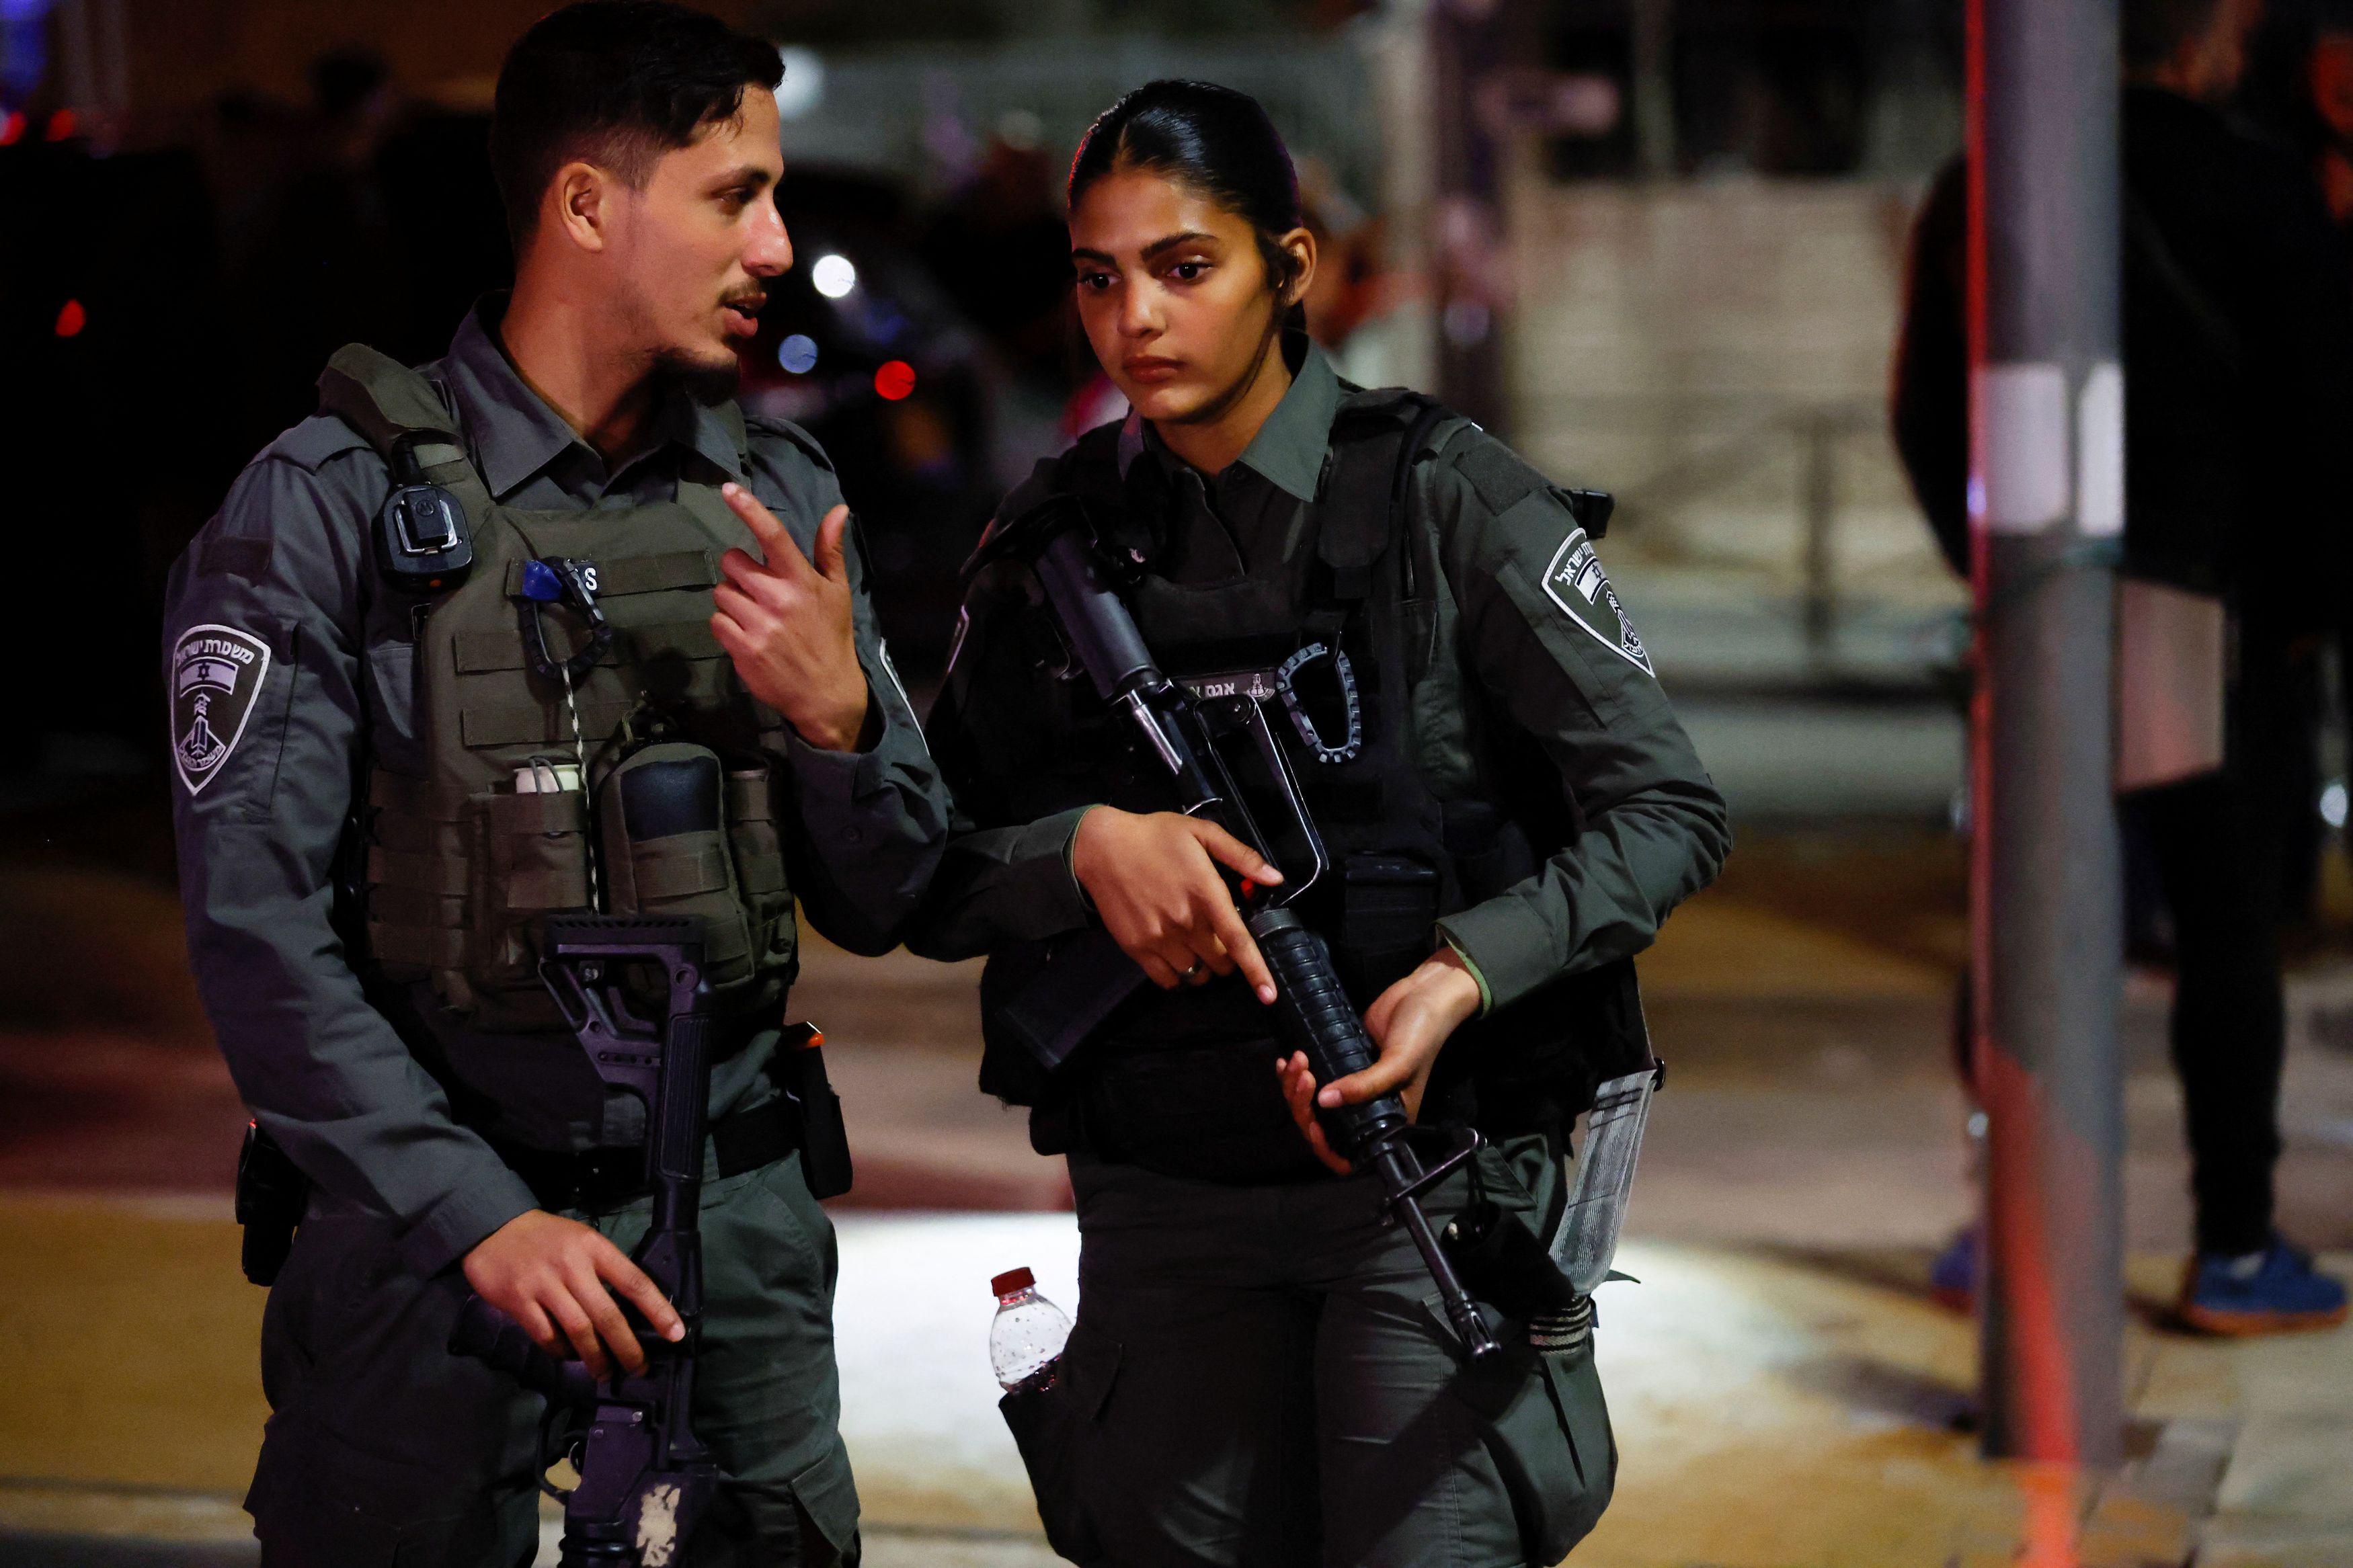 Ισραήλ: Νέα επίθεση στην Ιερουσαλήμ μετά από το μακελειό στη συναγωγή - Δύο τραυματίες